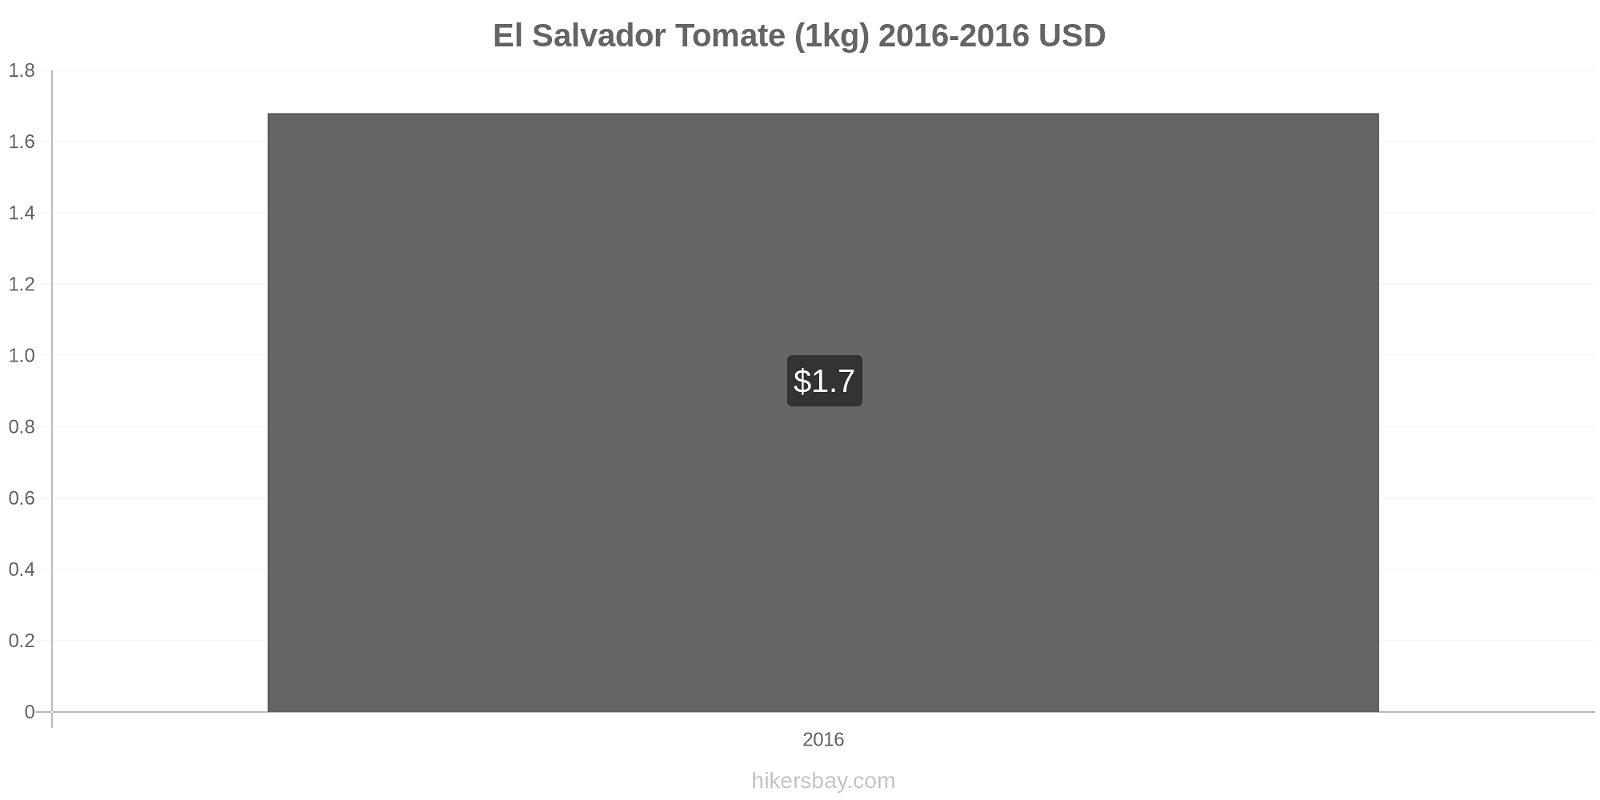 El Salvador cambios de precios Tomate (1kg) hikersbay.com